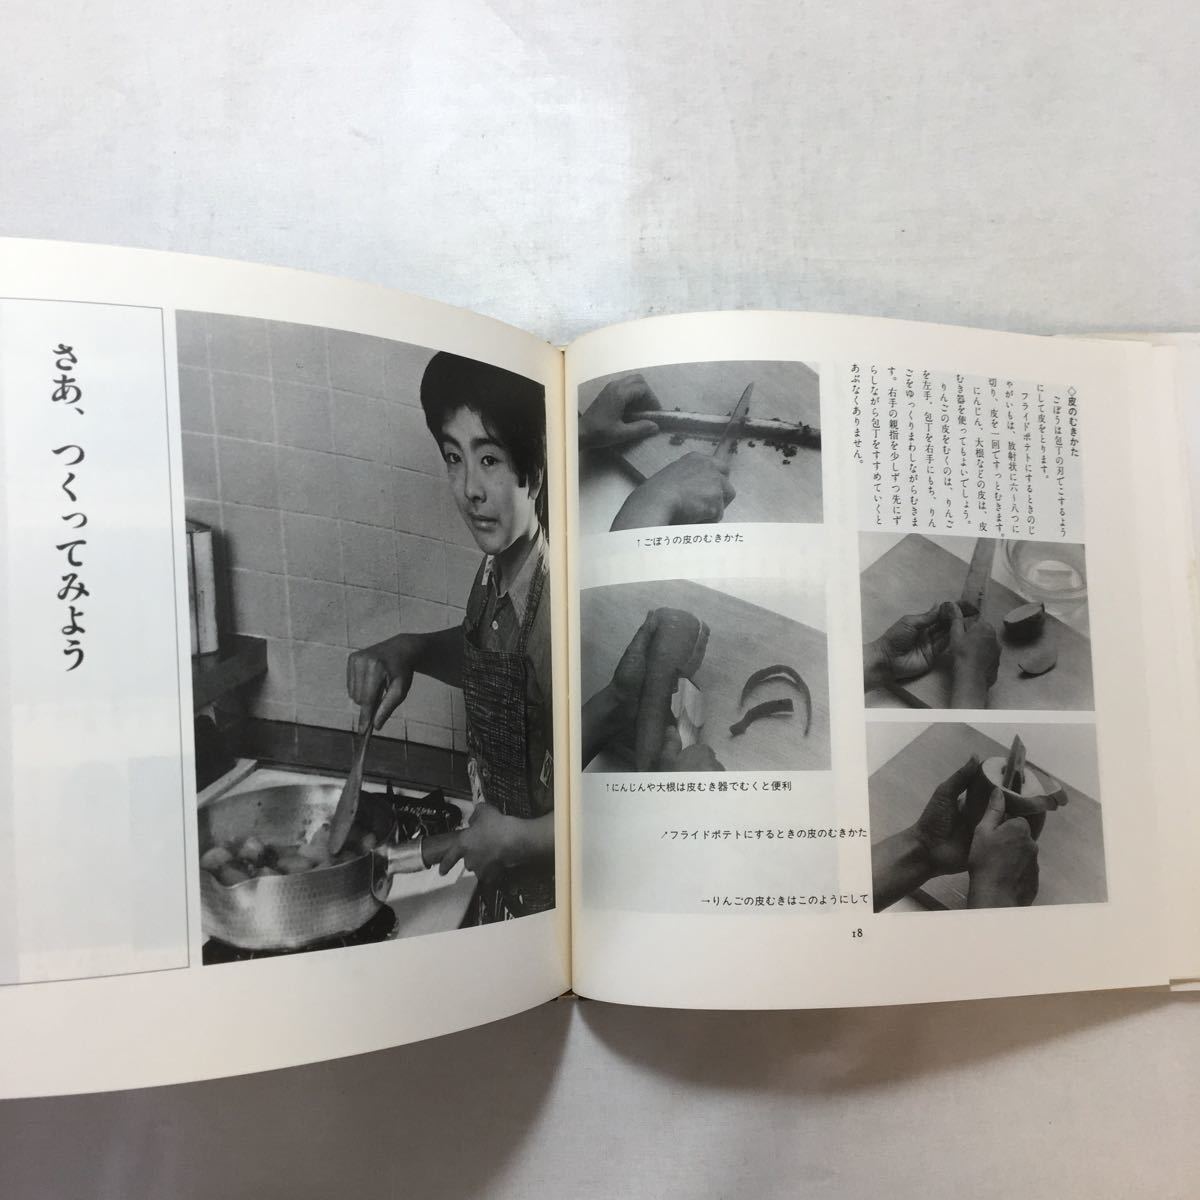 zaa-253! кулинария .... Мураками ..( работа ) ребенок .... серии 19 большой месяц книжный магазин (1987 год )